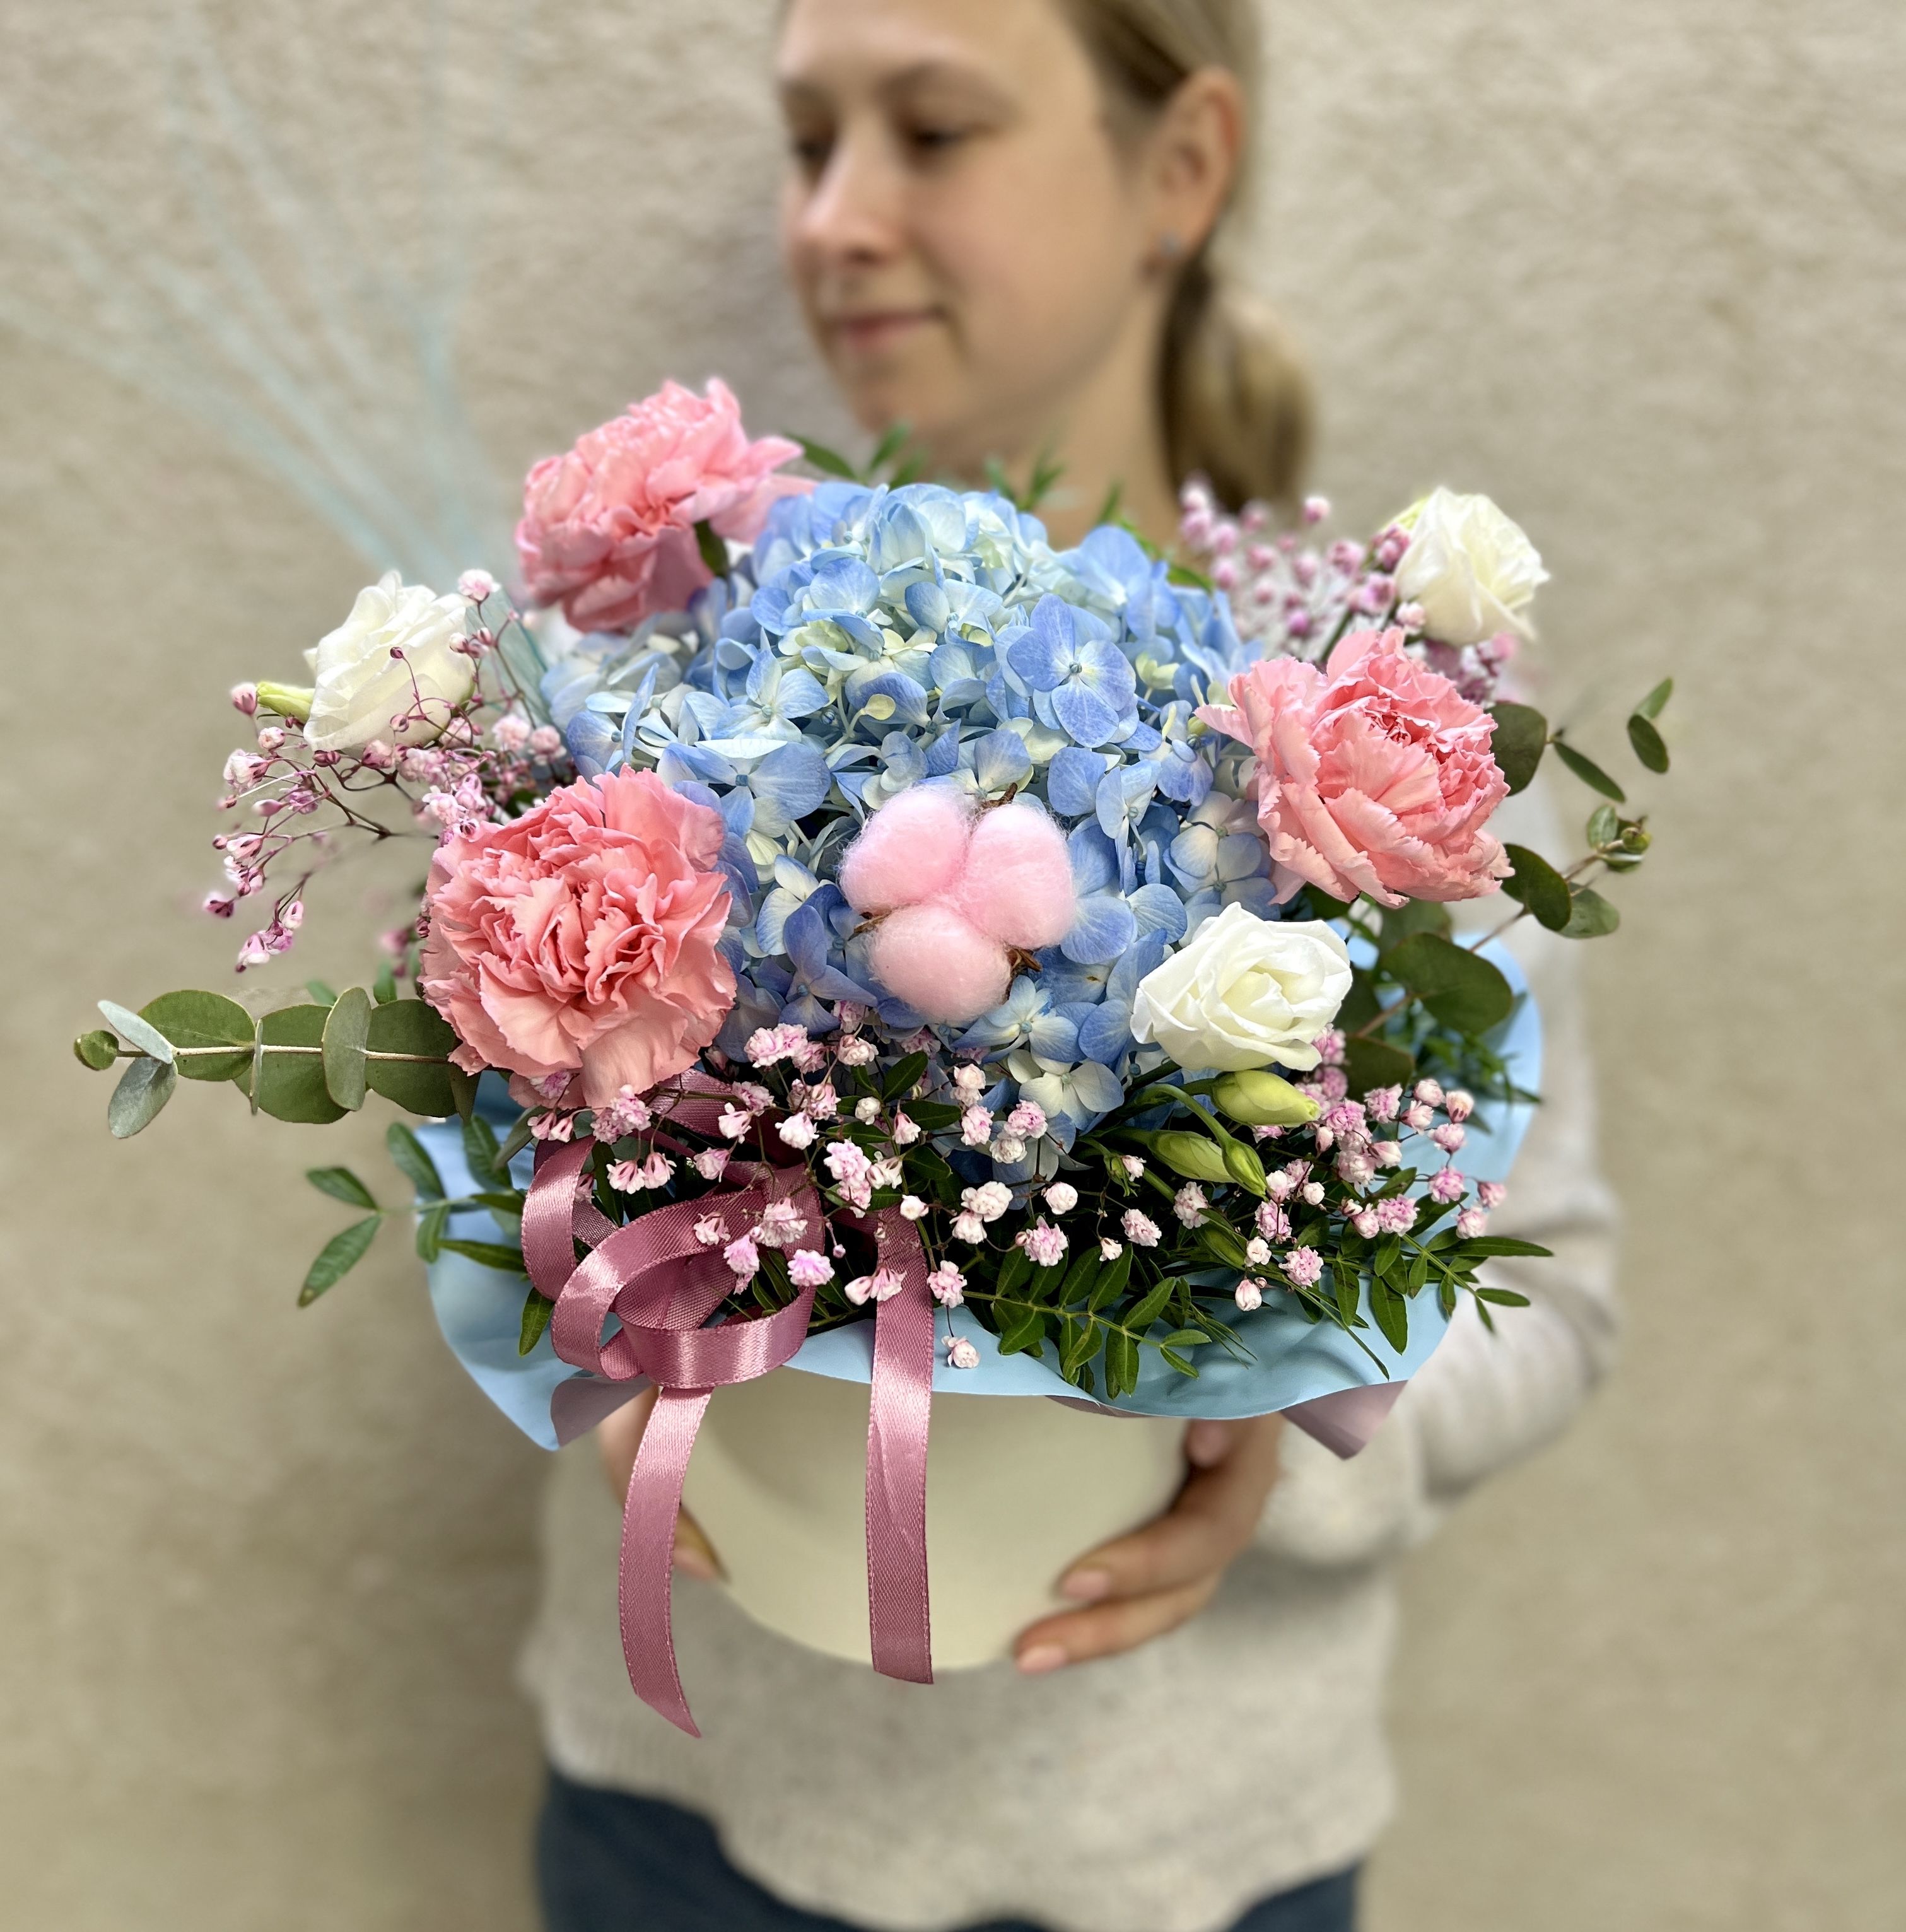 Живые цветы в коробке ОкЦветОк голубая гортензия и диантусы в цветочной композиции